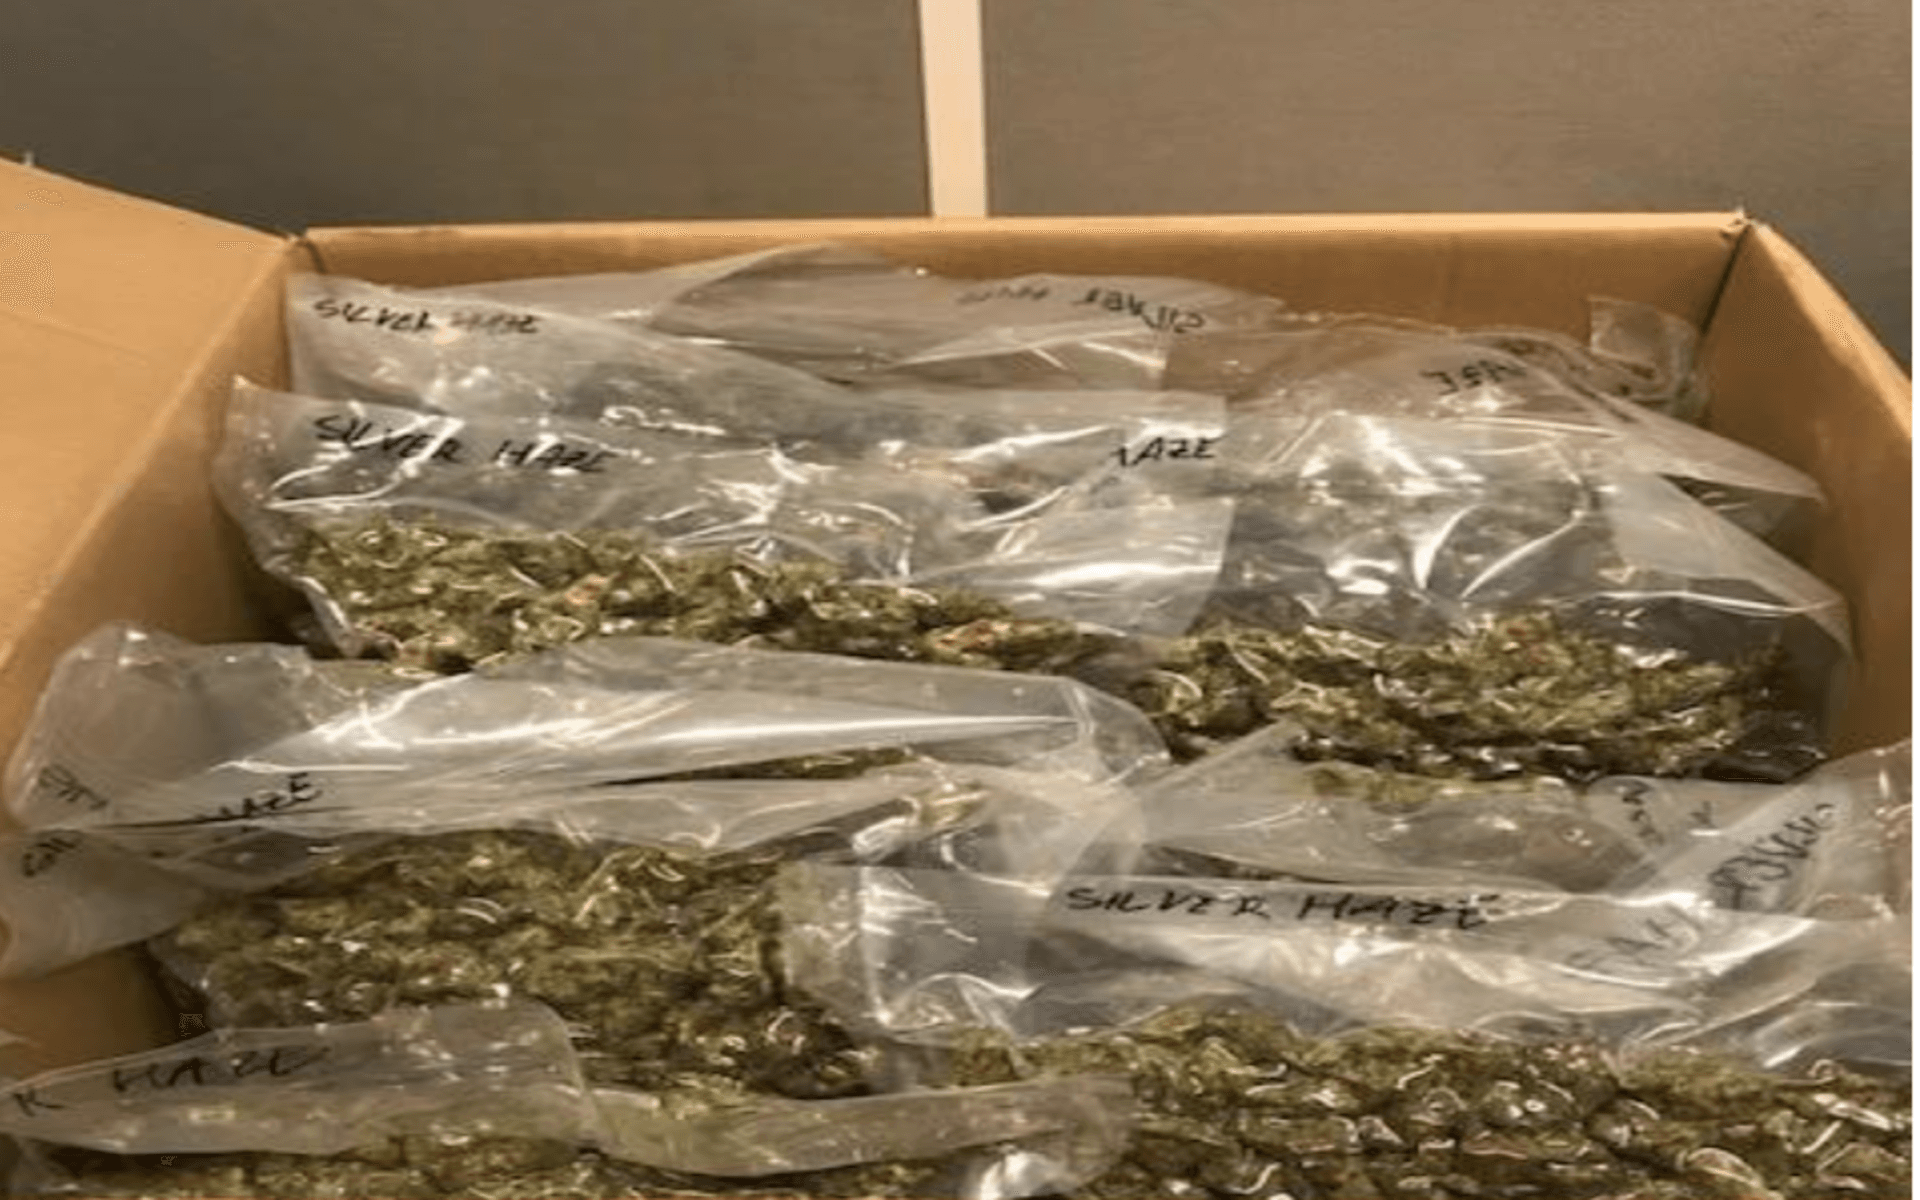 Pallarna med cannabis stod i mitten av lastutrymmet. Men en av gränspoliserna på platsen kunde känna doften och hittade med hjälp av narkotikahundar godset. 